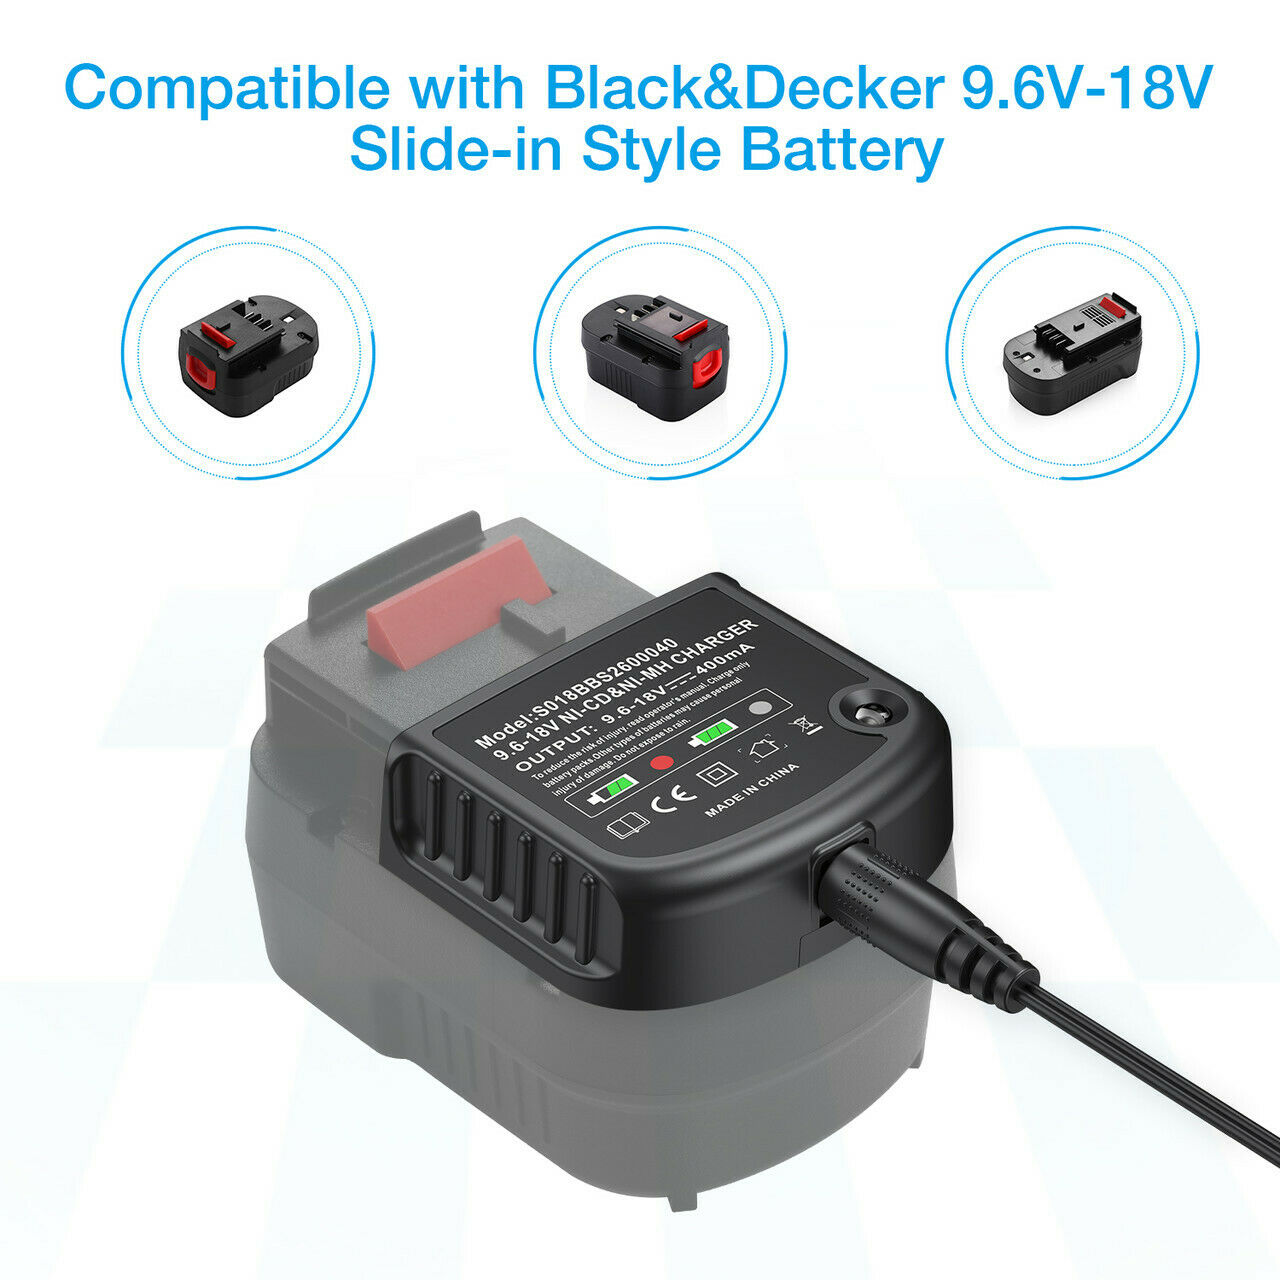 NiCd NiMh Charger for Black & Decker 18V 12V 14.4V 9.6V battery